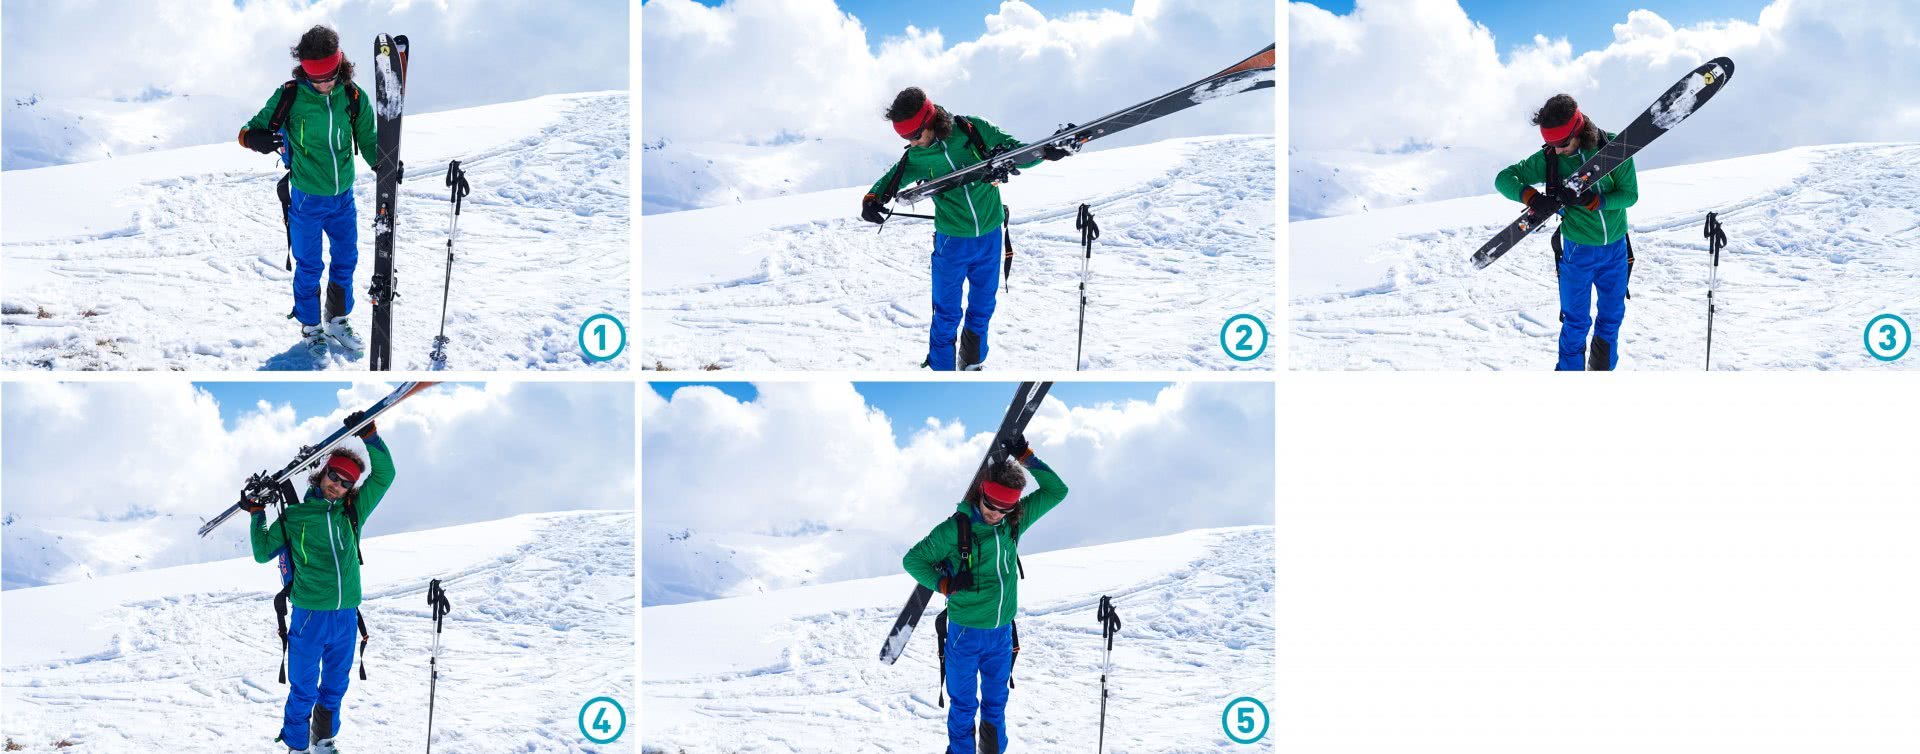 Serienbild: Befestigung der Skier für Rucksäcke ohne spezielle Befestigungsvorrichtung